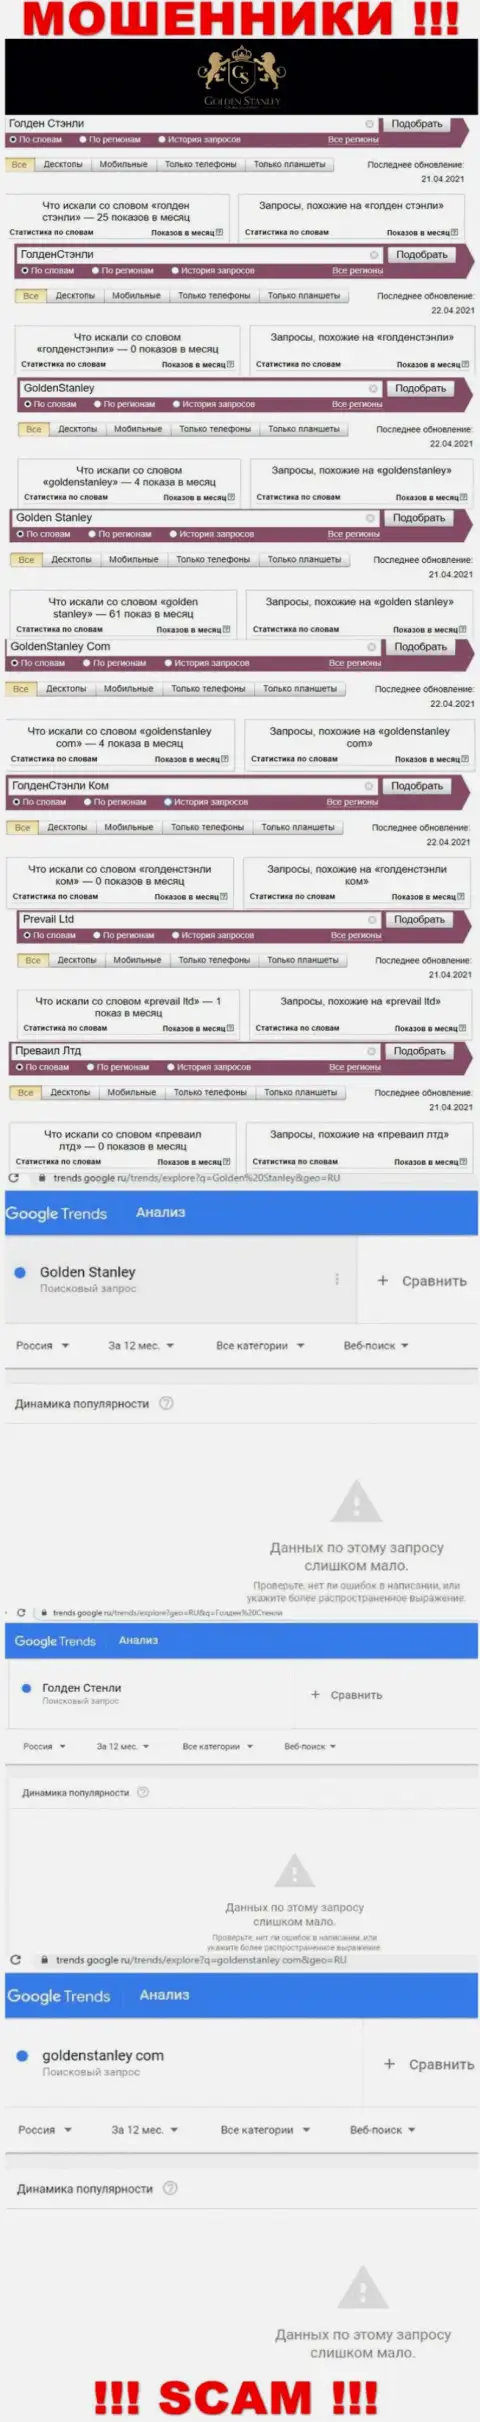 Статистика интернет запросов в поисковиках касательно мошенников GoldenStanley